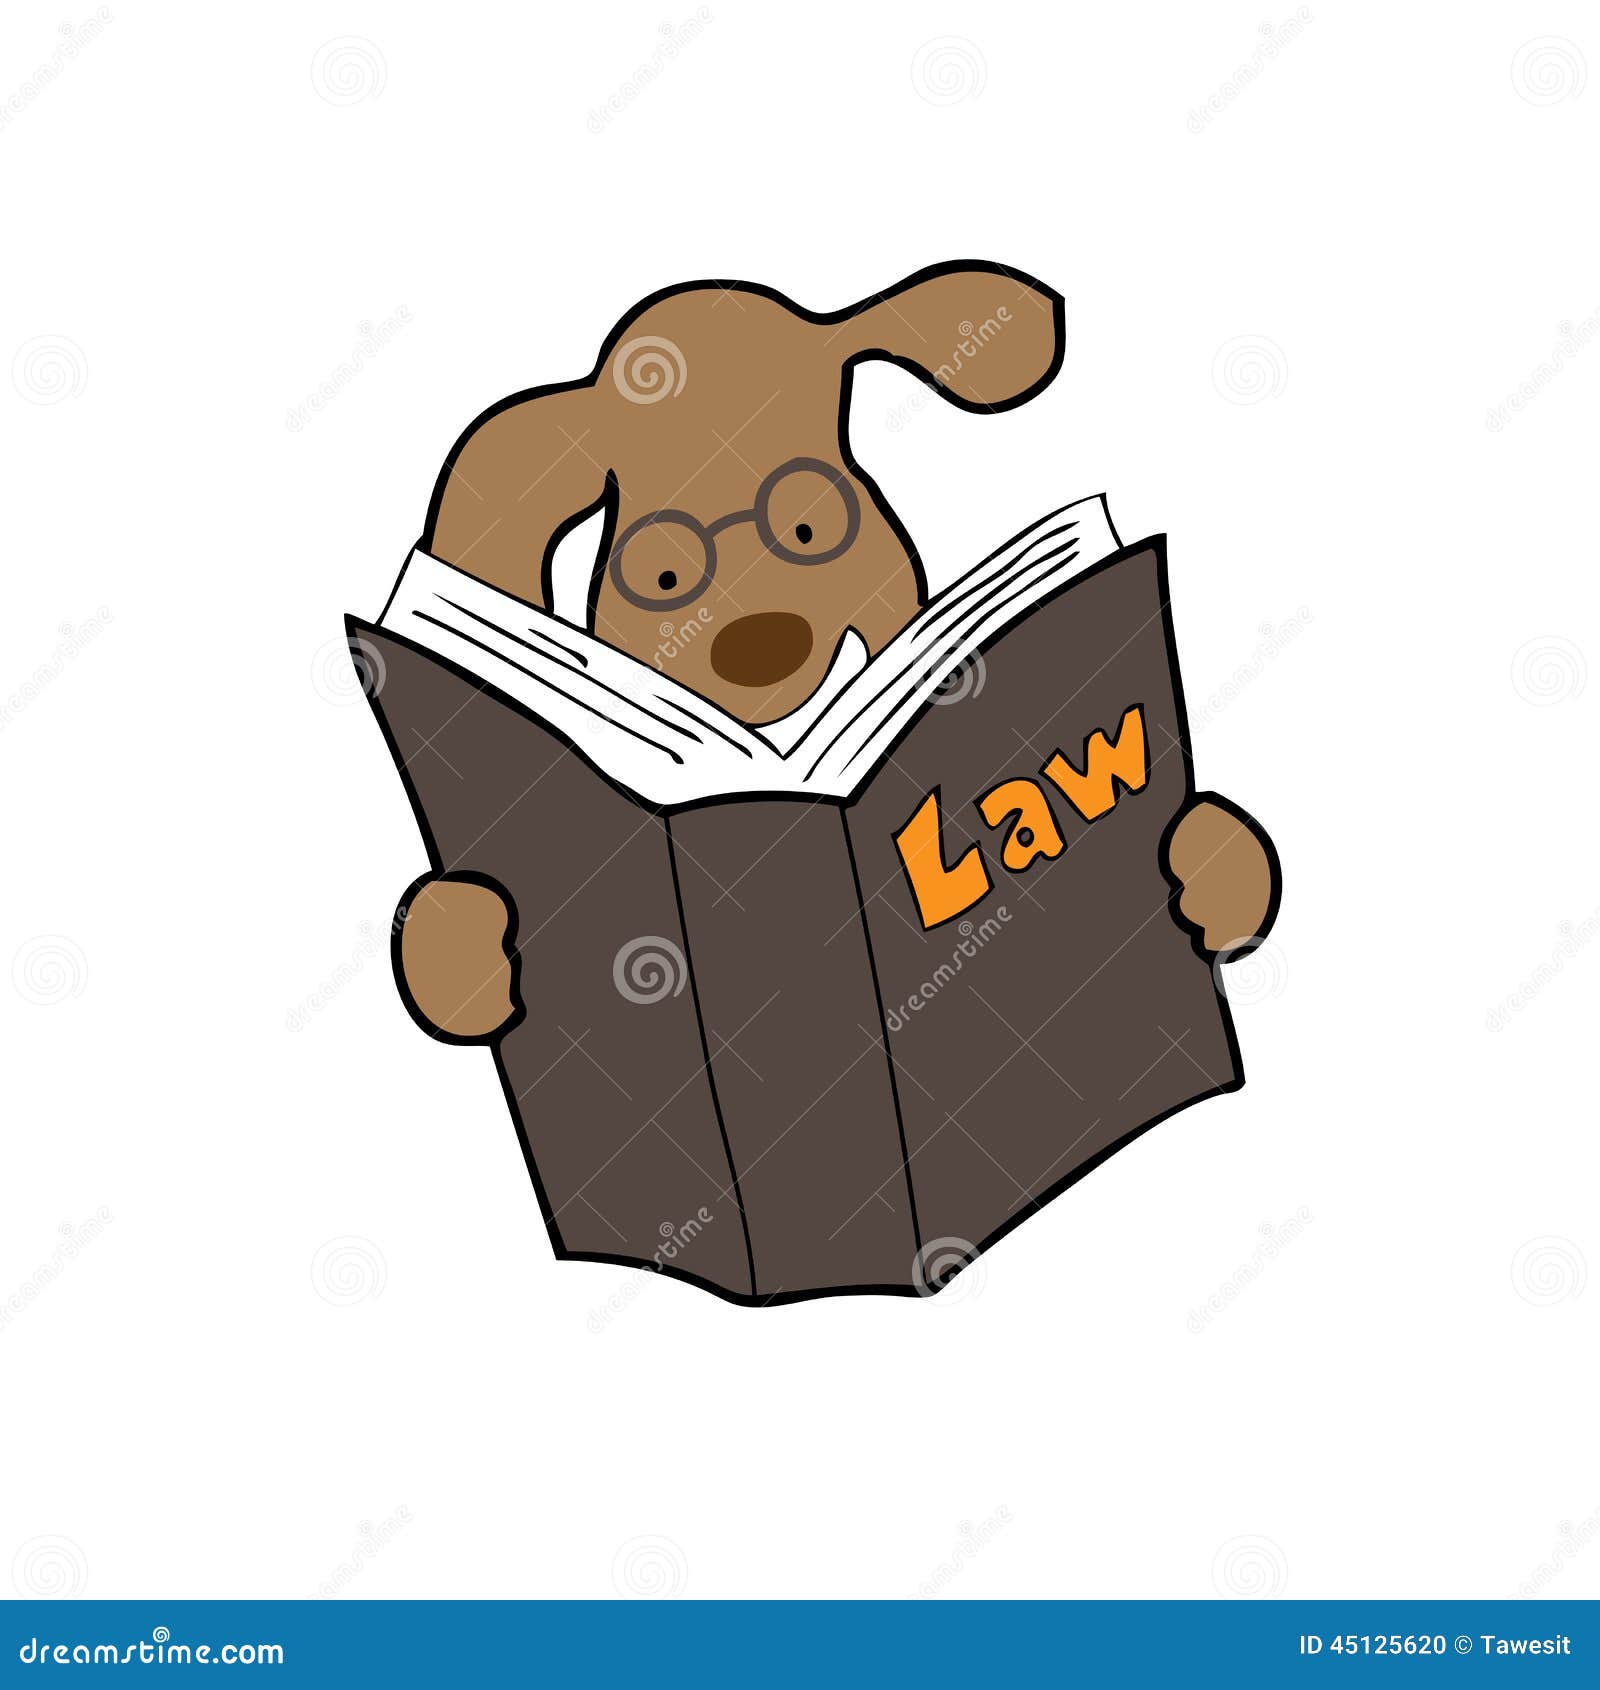 Dog Law [1928]